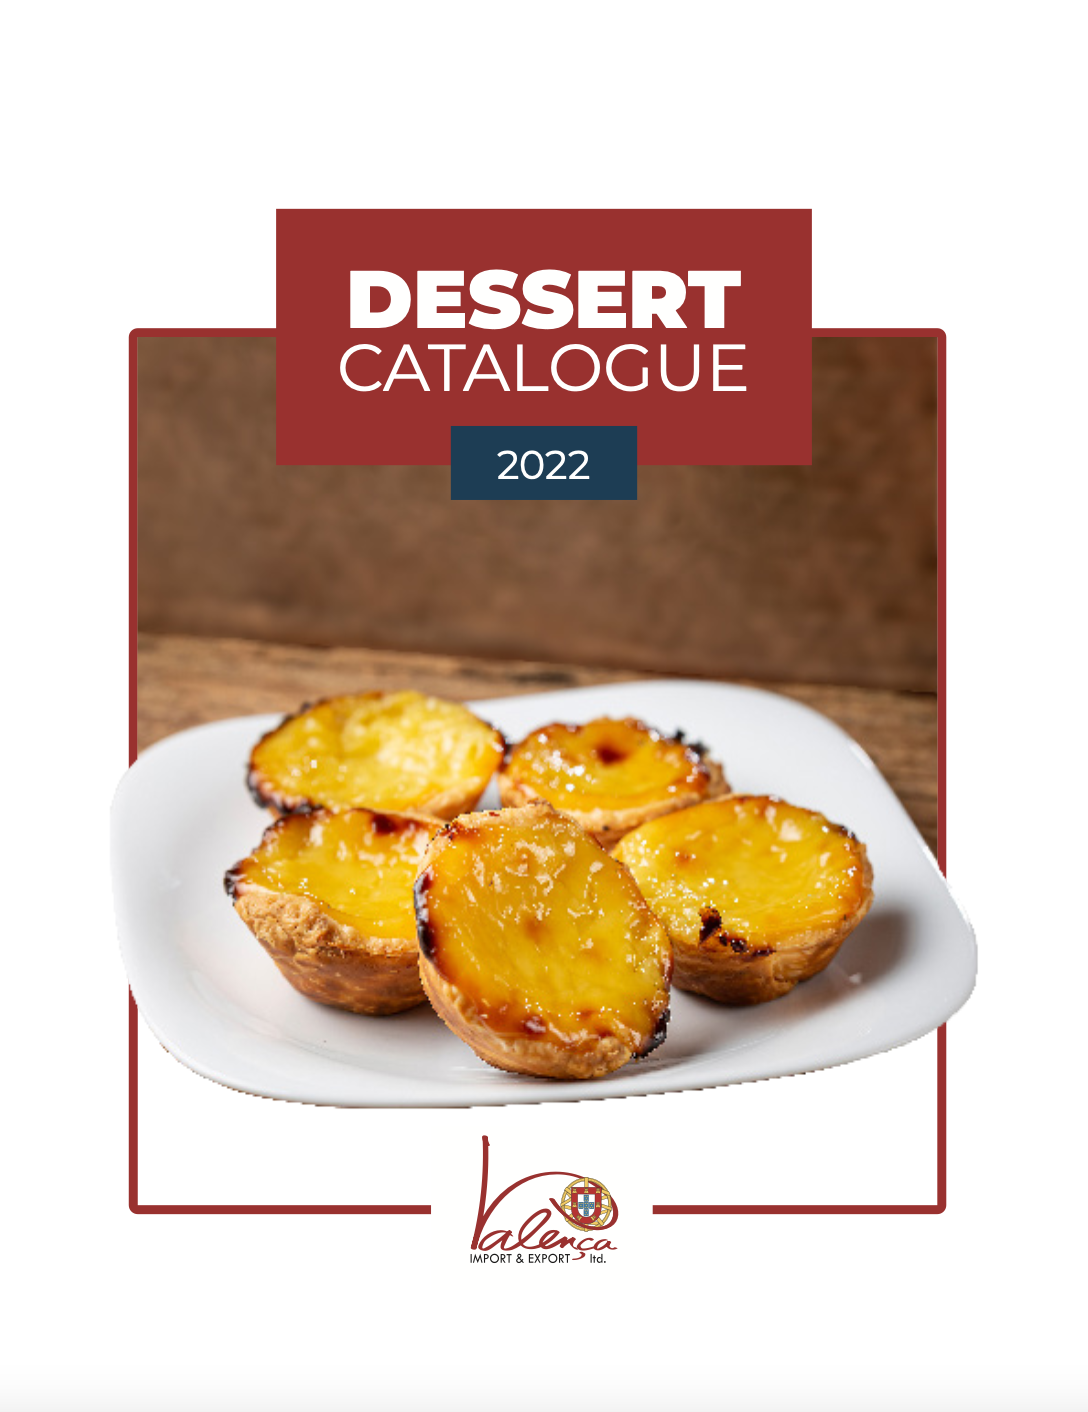 Dessert Catalogue 2022